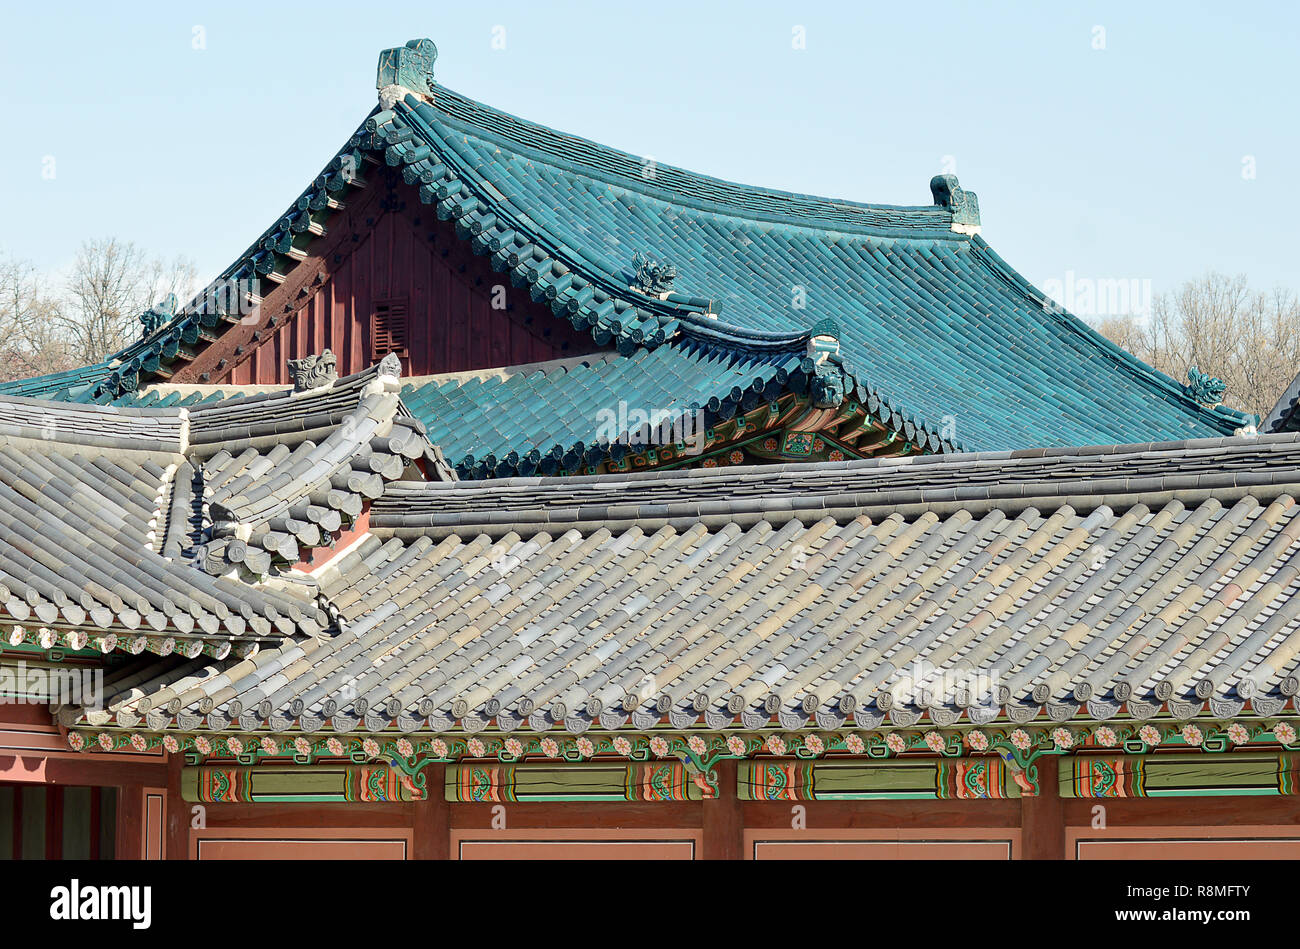 Tetti Hipped, piastrelle e la decorazione, tipico coreano sontuosa architettura presso il Palazzo di Changdeok, Seul. Corea Foto Stock